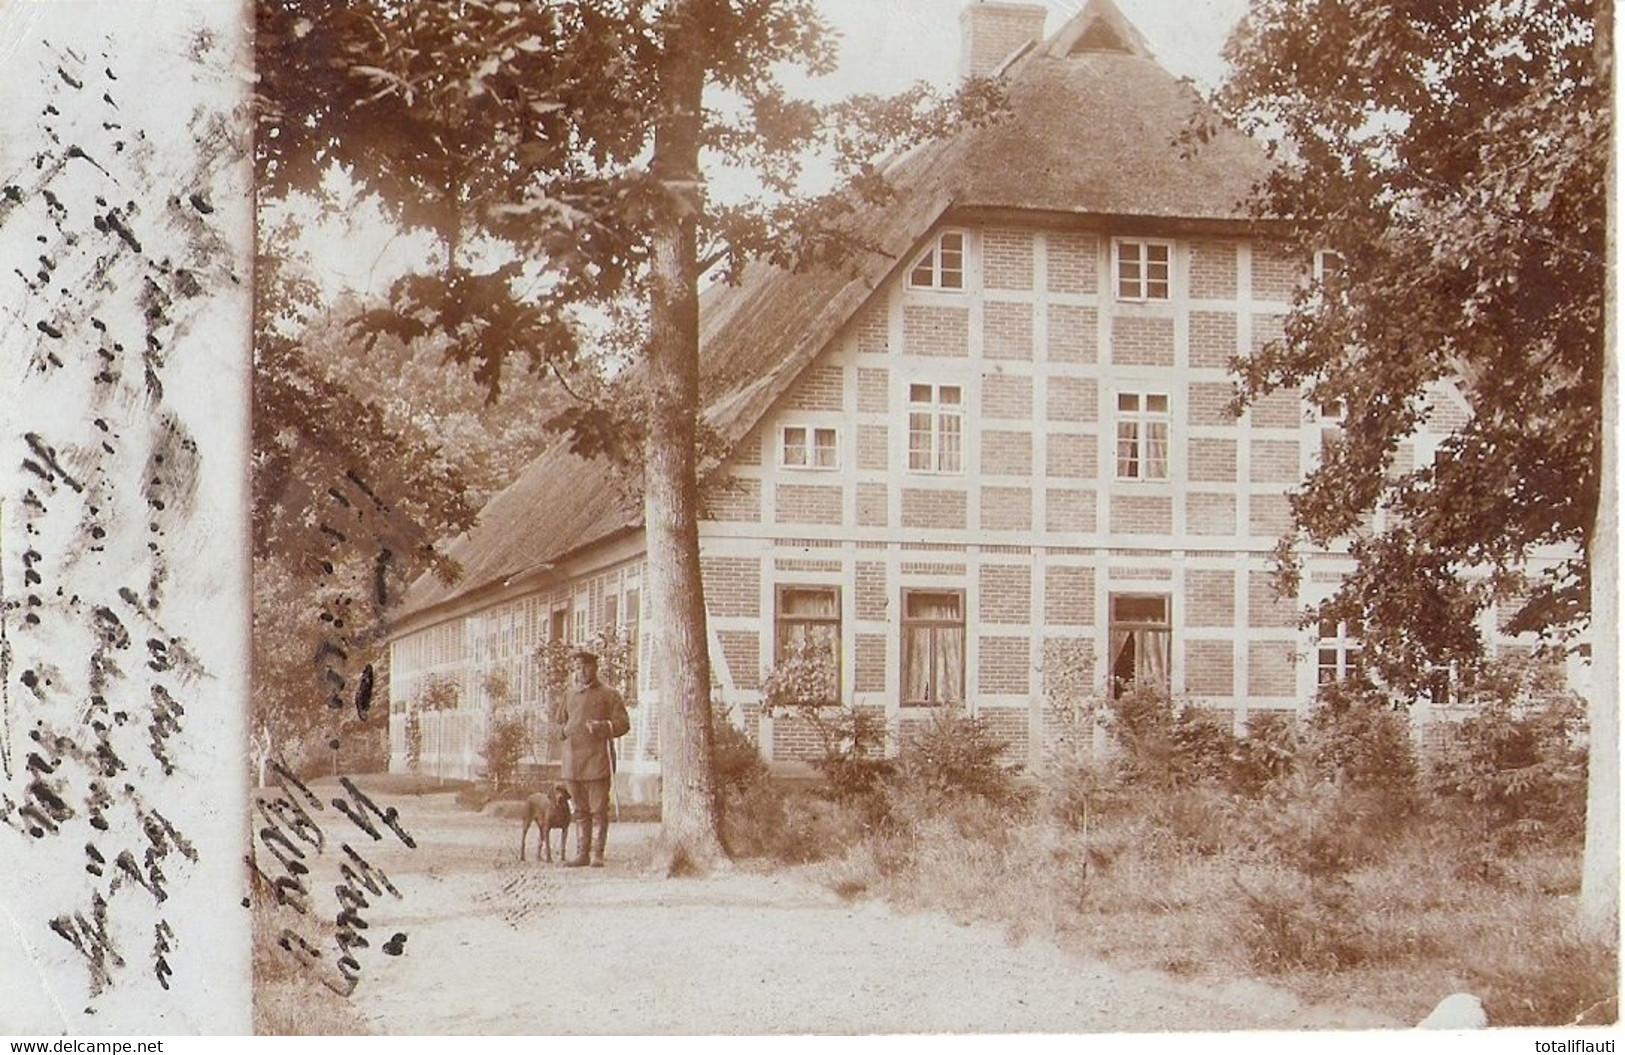 FRIELINGEN Kr Fallingbostel Forsthaus Förster Mit Jagdhund 12.3.1904 Original Private Fotokarte Der Zeit - Fallingbostel